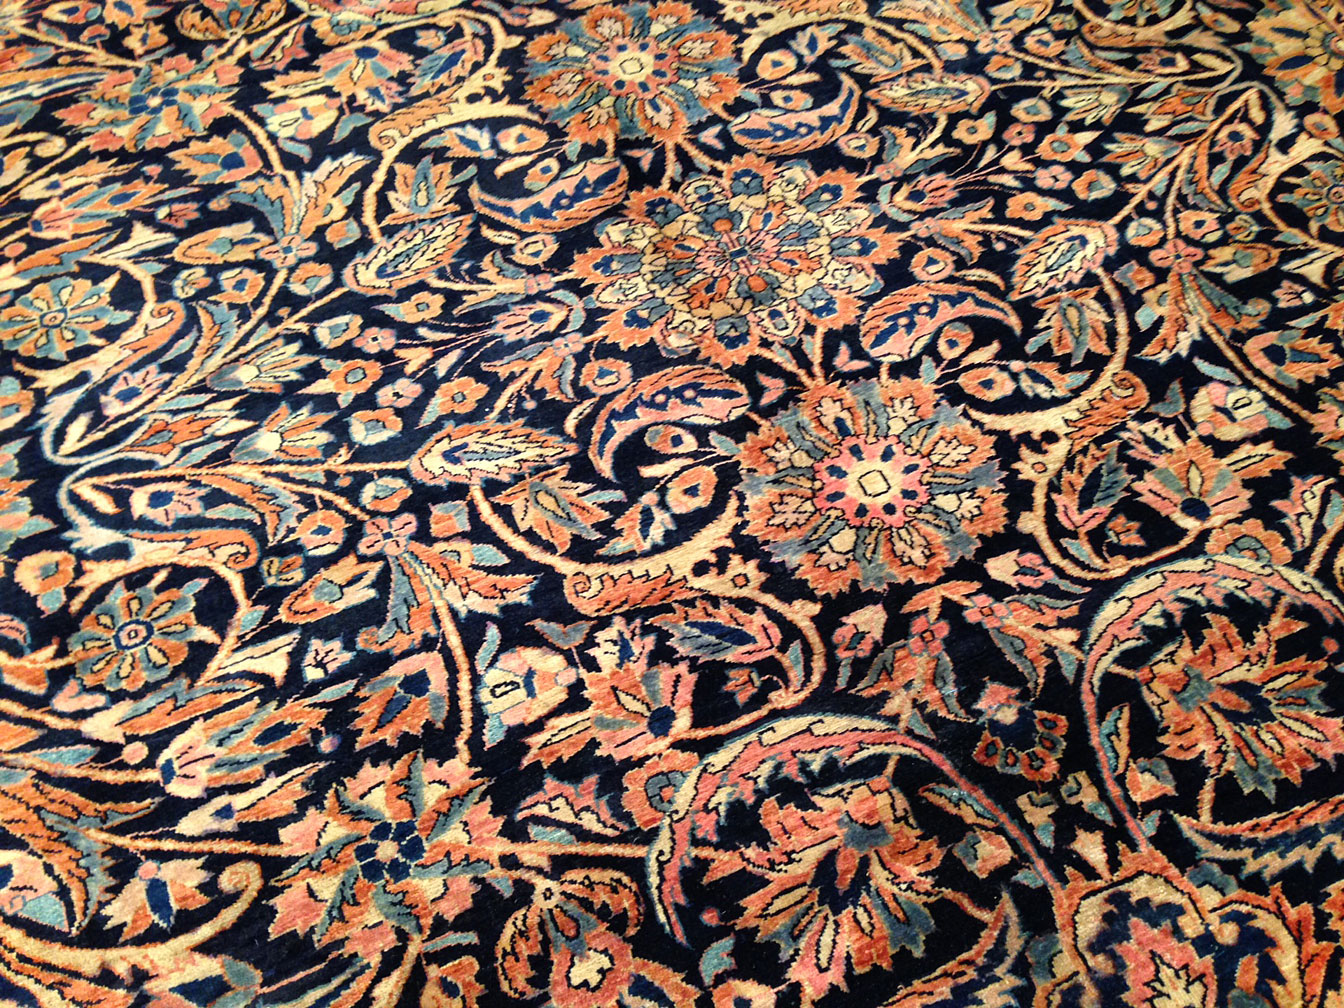 Antique sarouk Carpet - # 8905